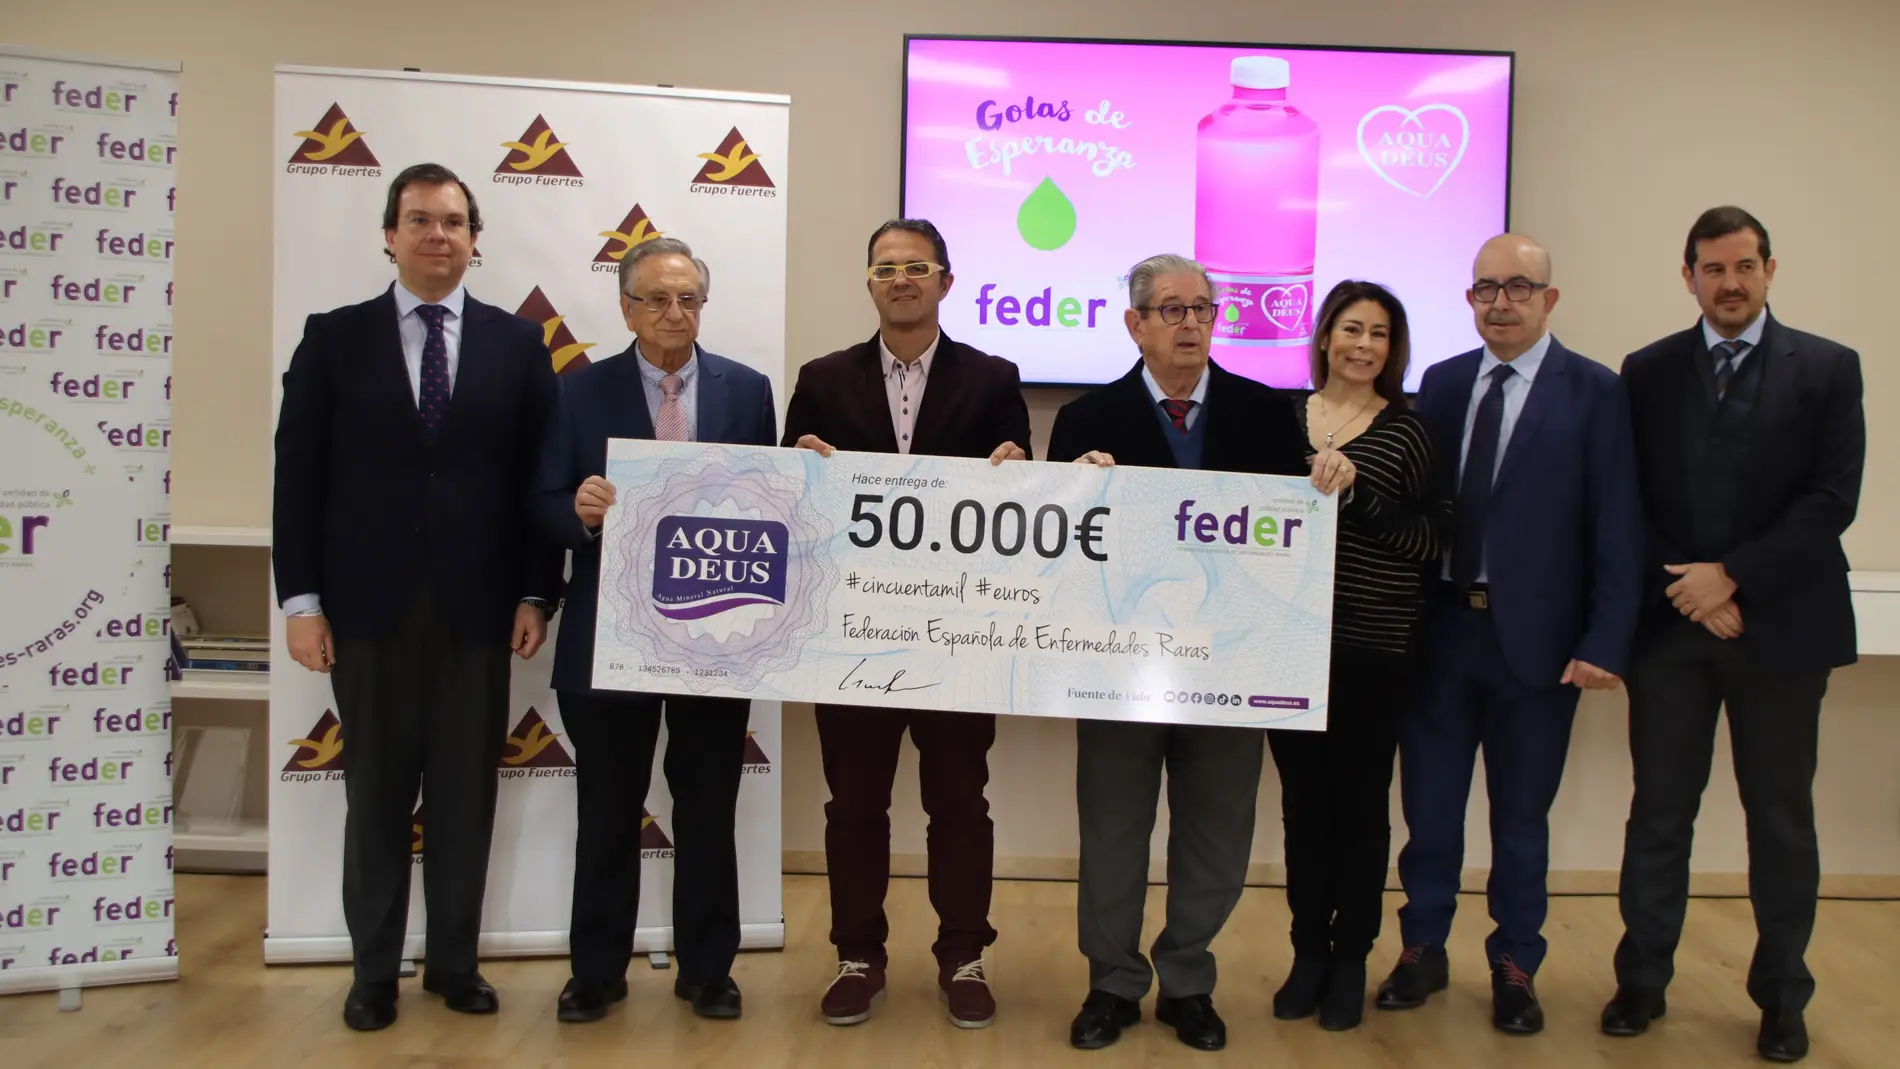 Aquadeus dona 50.000 euros a la Federación Española de Enfermedades Raras